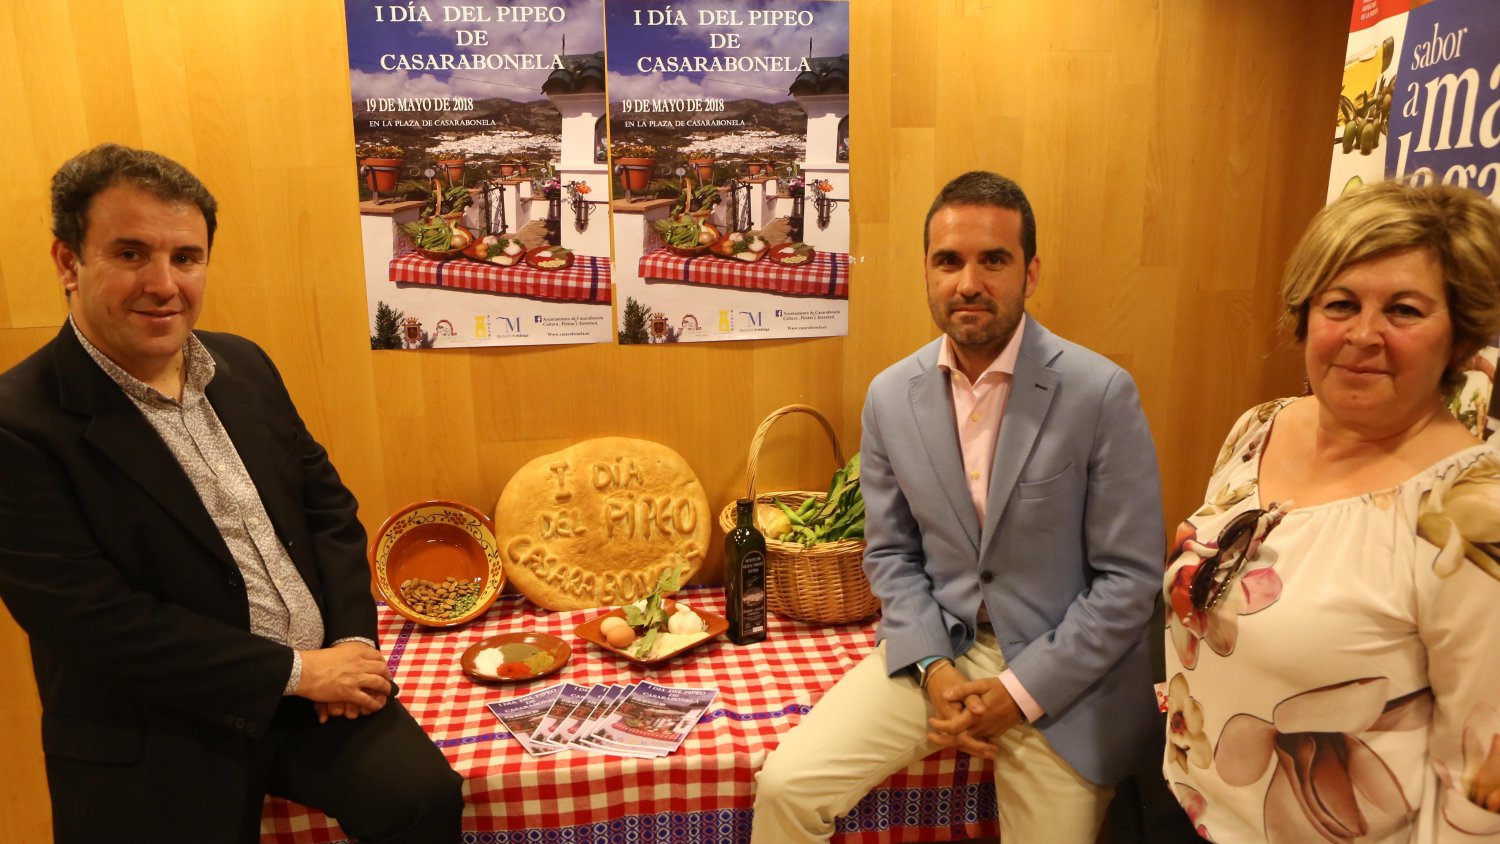 Casarabonela rinde homenaje a las habas con la celebración del 'I Día del Pipeo'